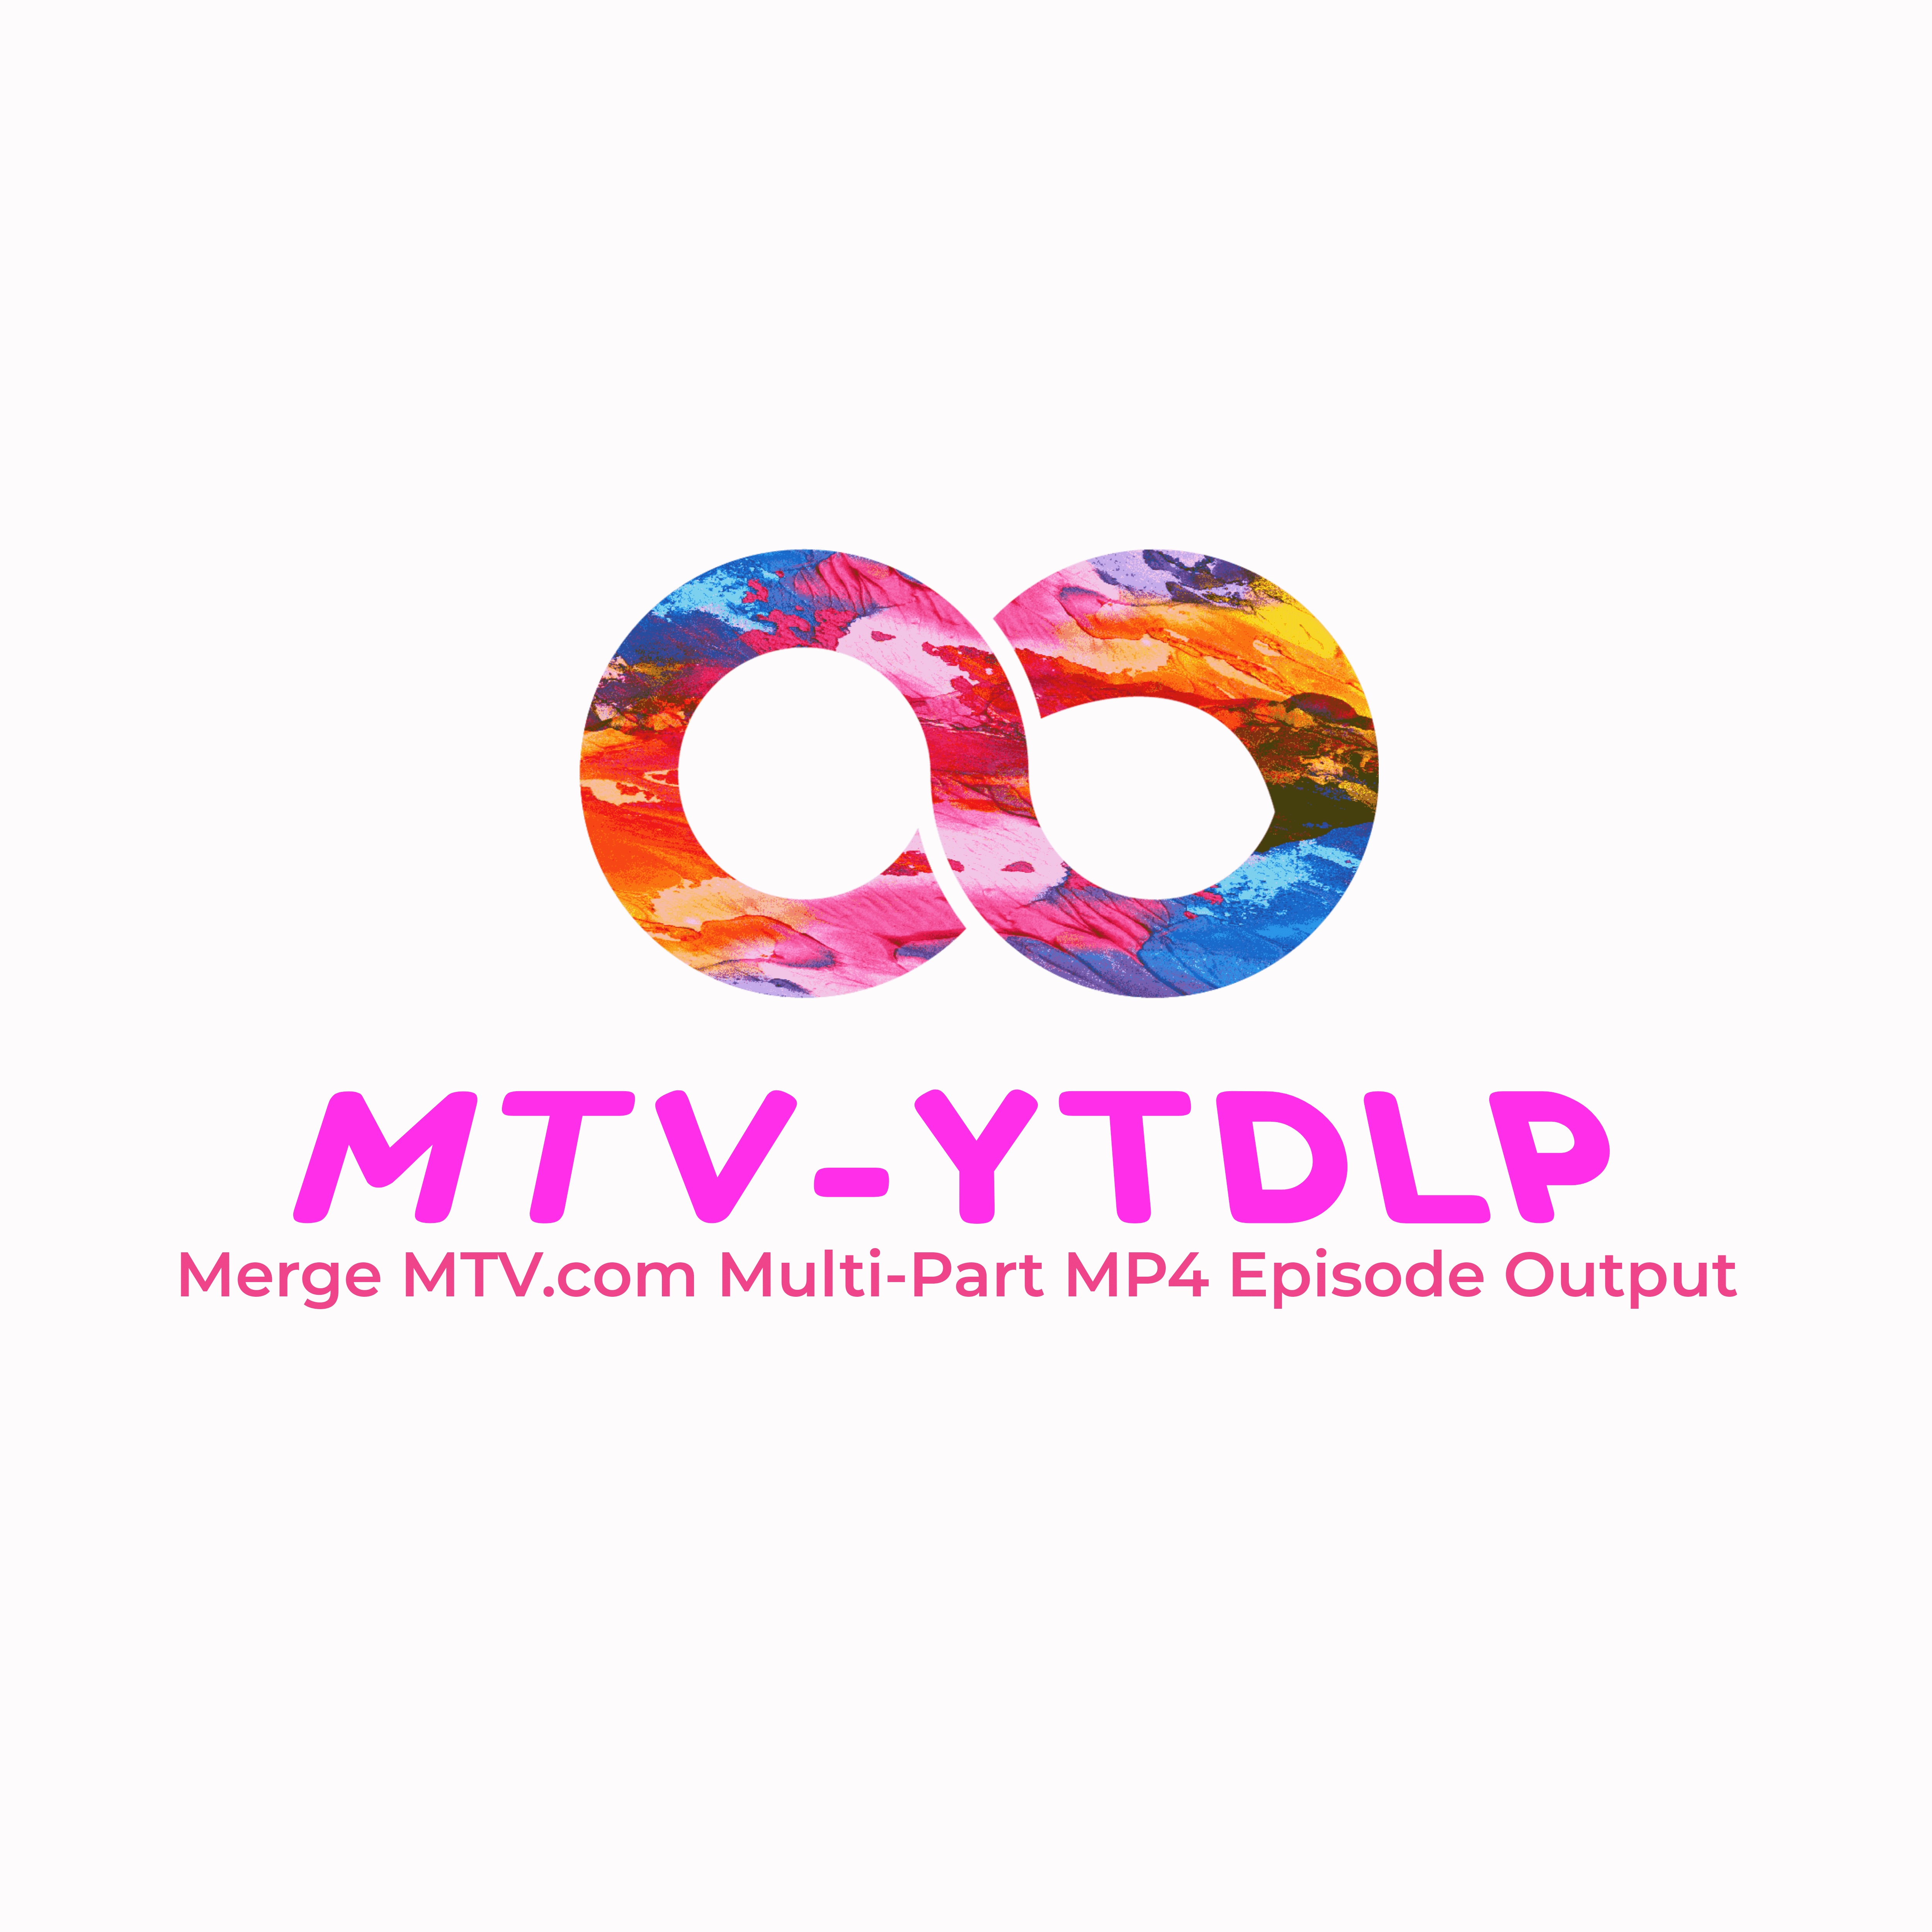 MTV-YTDLP